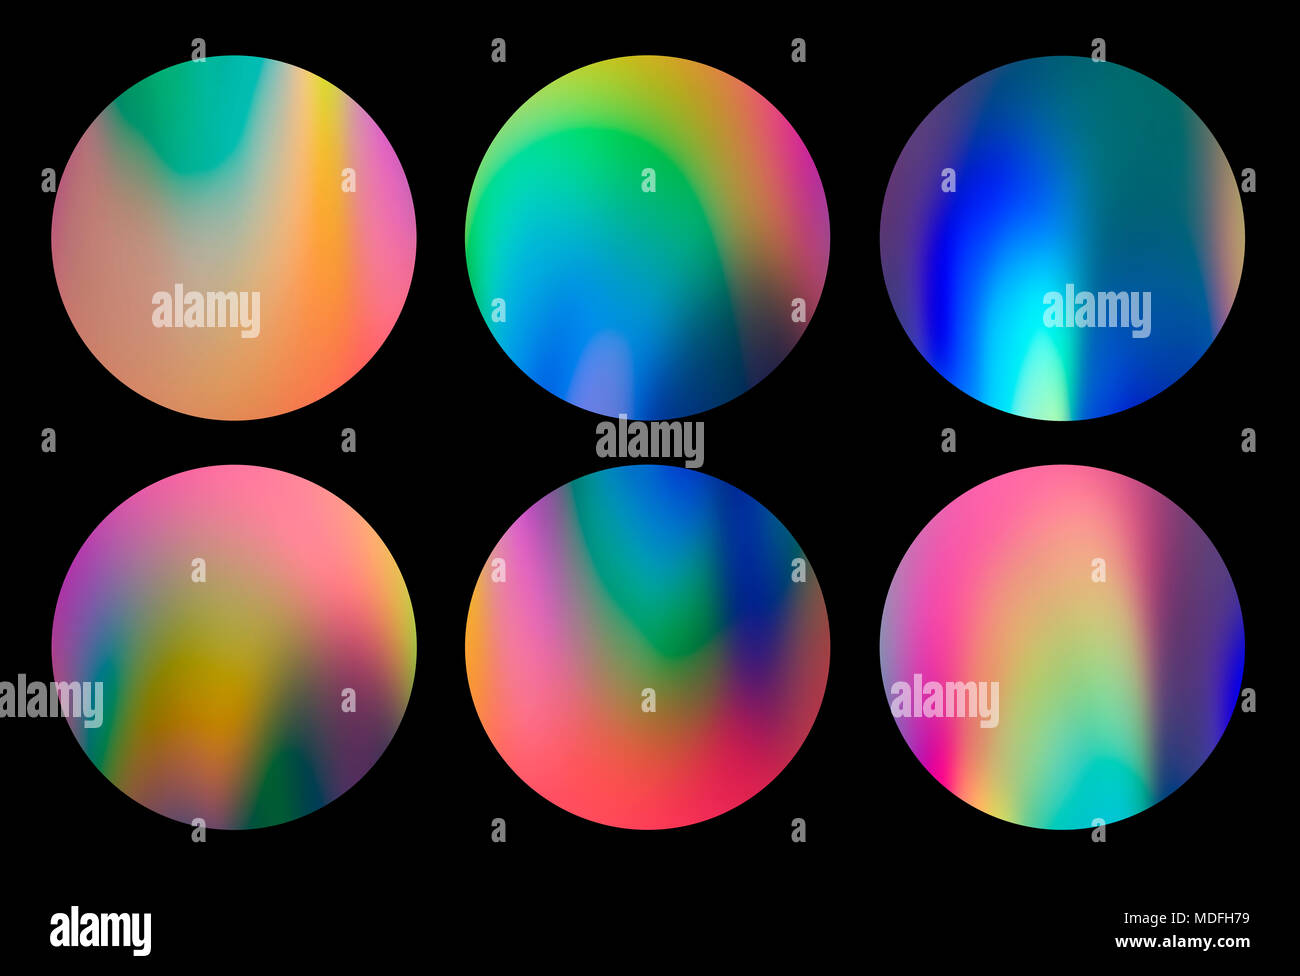 Spektrum abstrakt vaporwave holographischen kreisförmigen Designs, trendigen bunten Hintergrund in Pastelltönen Neon farbe. Für kreatives Design, CD-Cover, Poster, Plakat, Buch Stockfoto